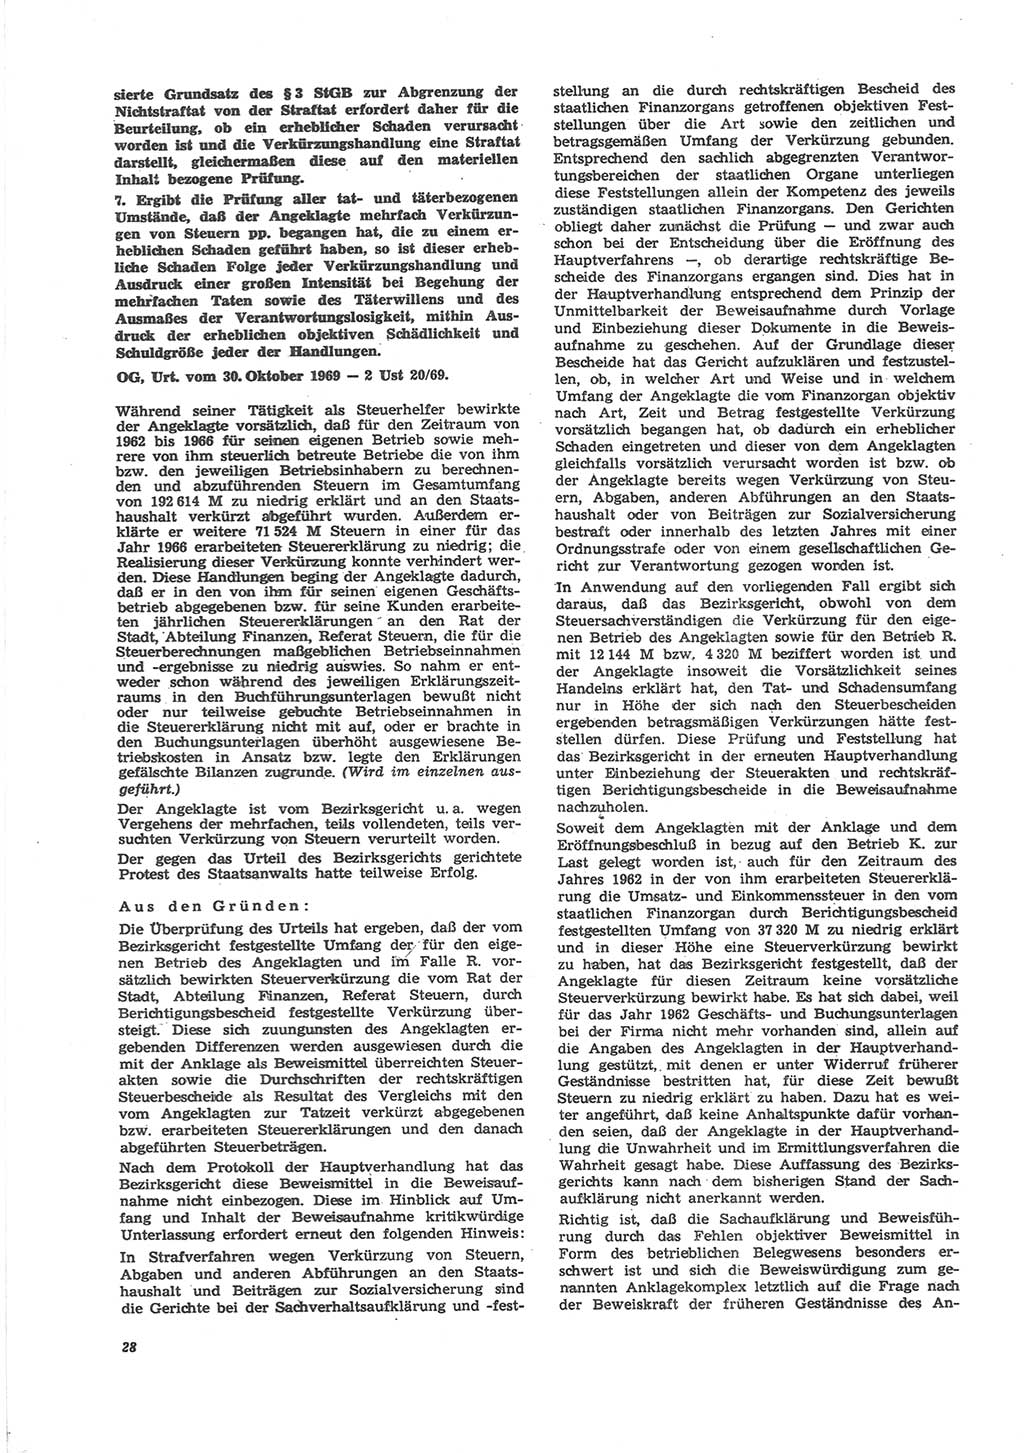 Neue Justiz (NJ), Zeitschrift für Recht und Rechtswissenschaft [Deutsche Demokratische Republik (DDR)], 24. Jahrgang 1970, Seite 28 (NJ DDR 1970, S. 28)